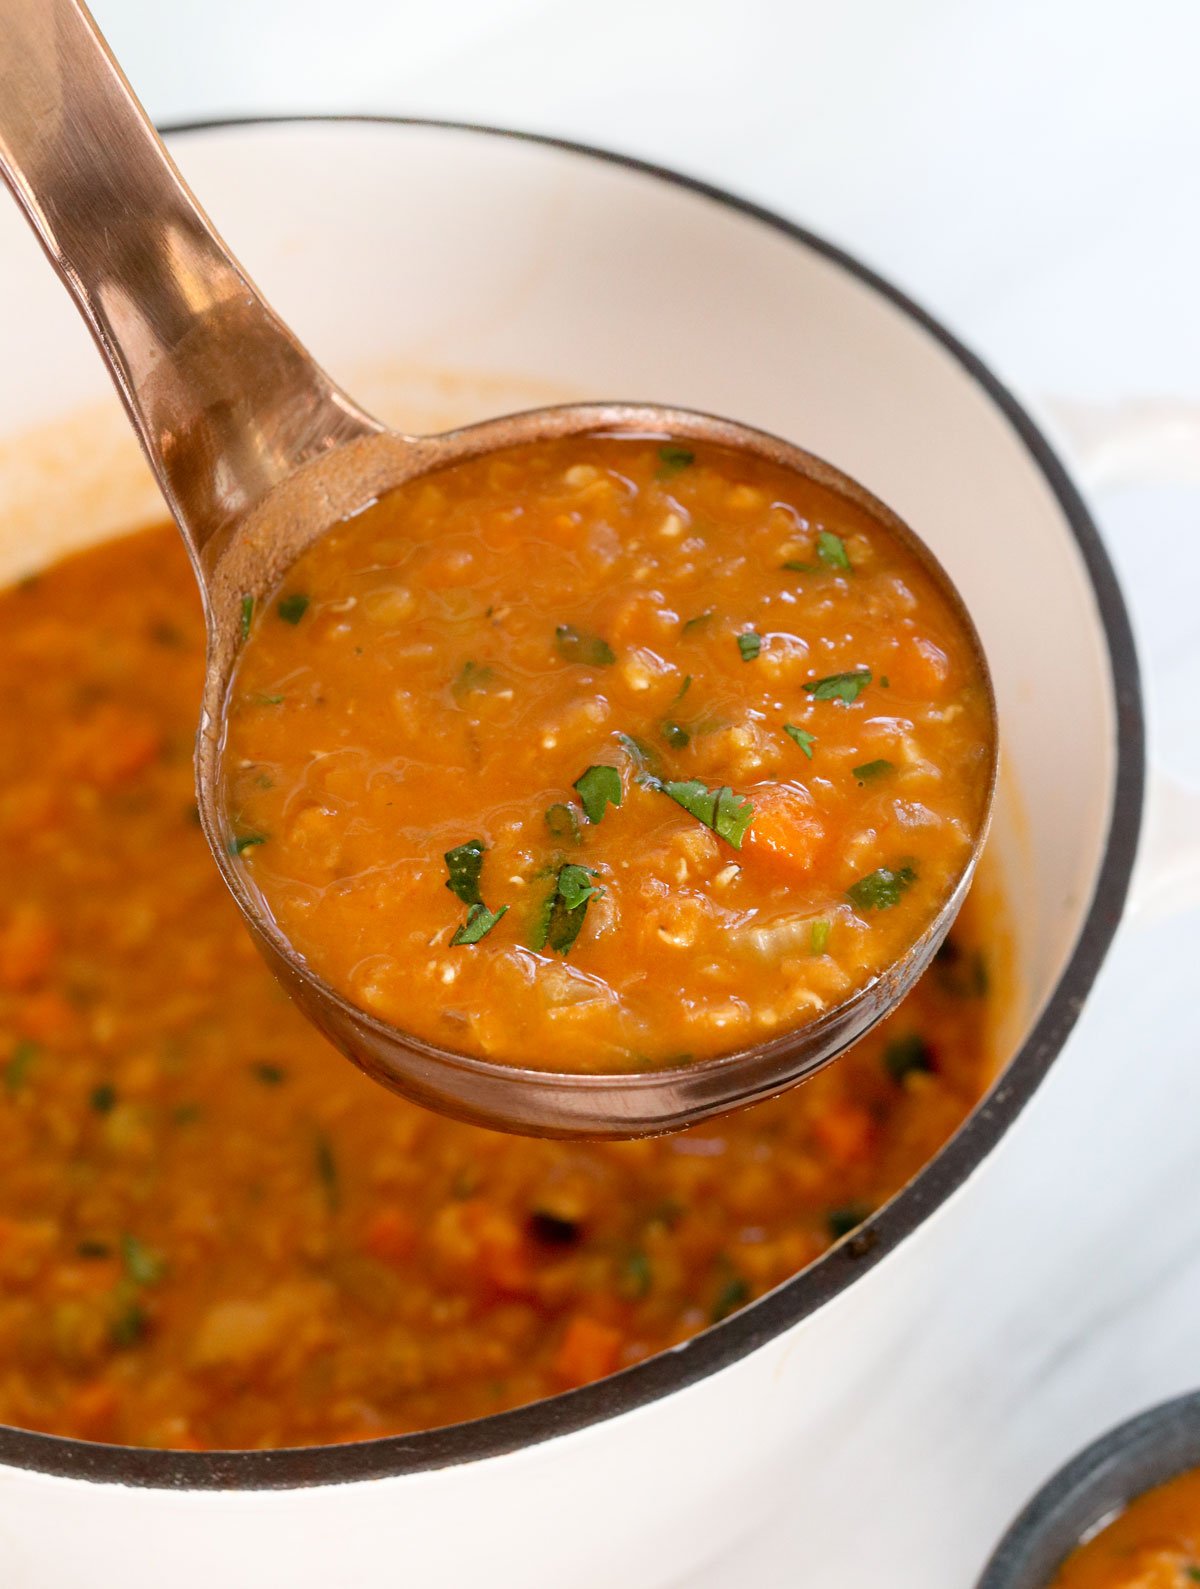 zuppa di lenticchie rosse al mestolo.